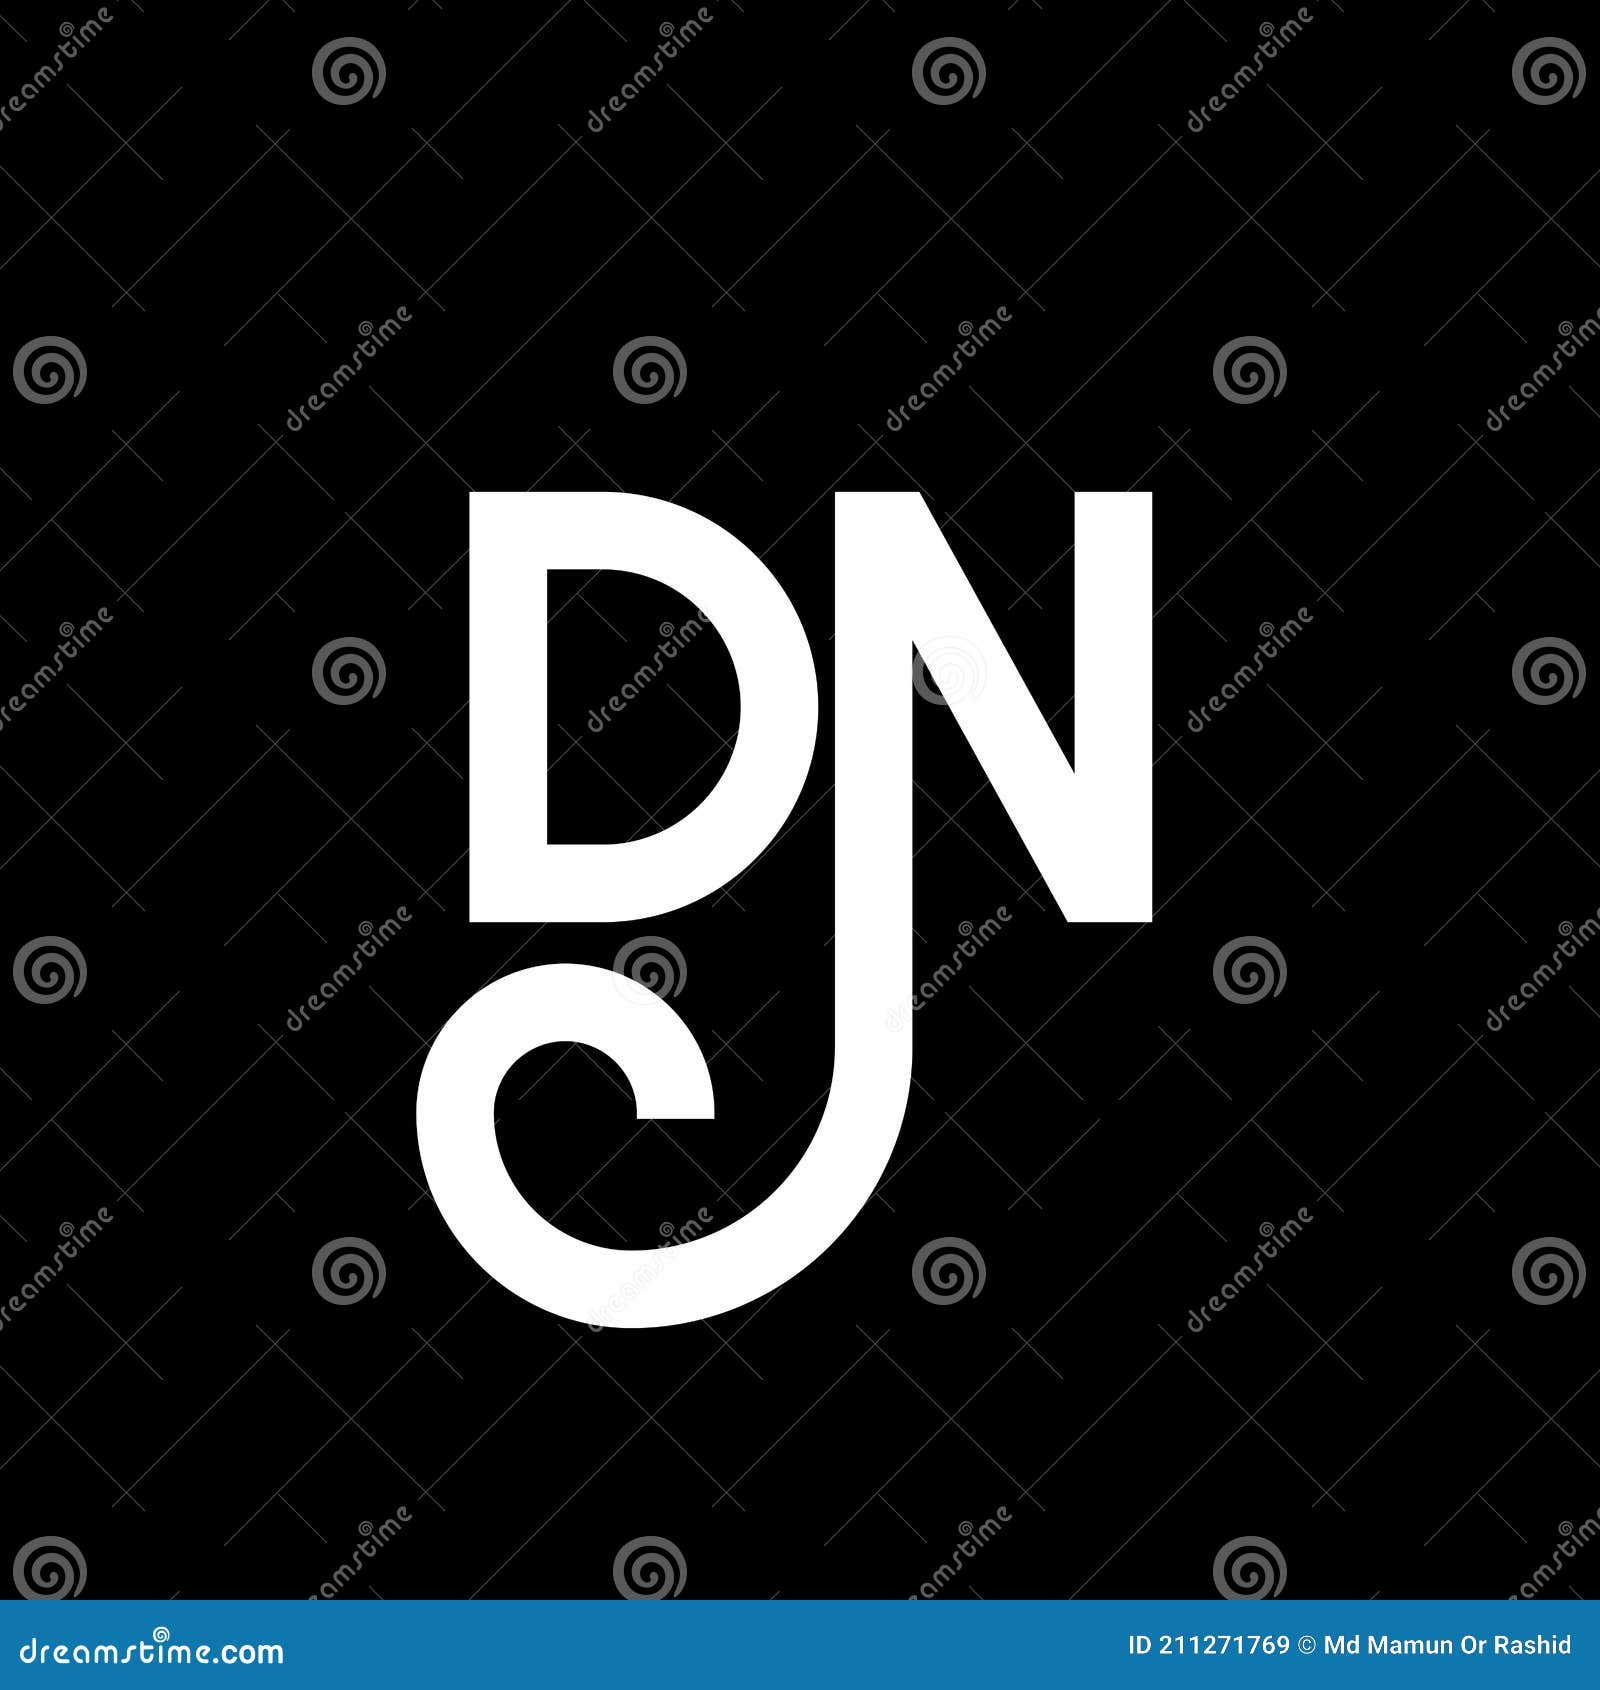 Discover more than 114 dn logo design